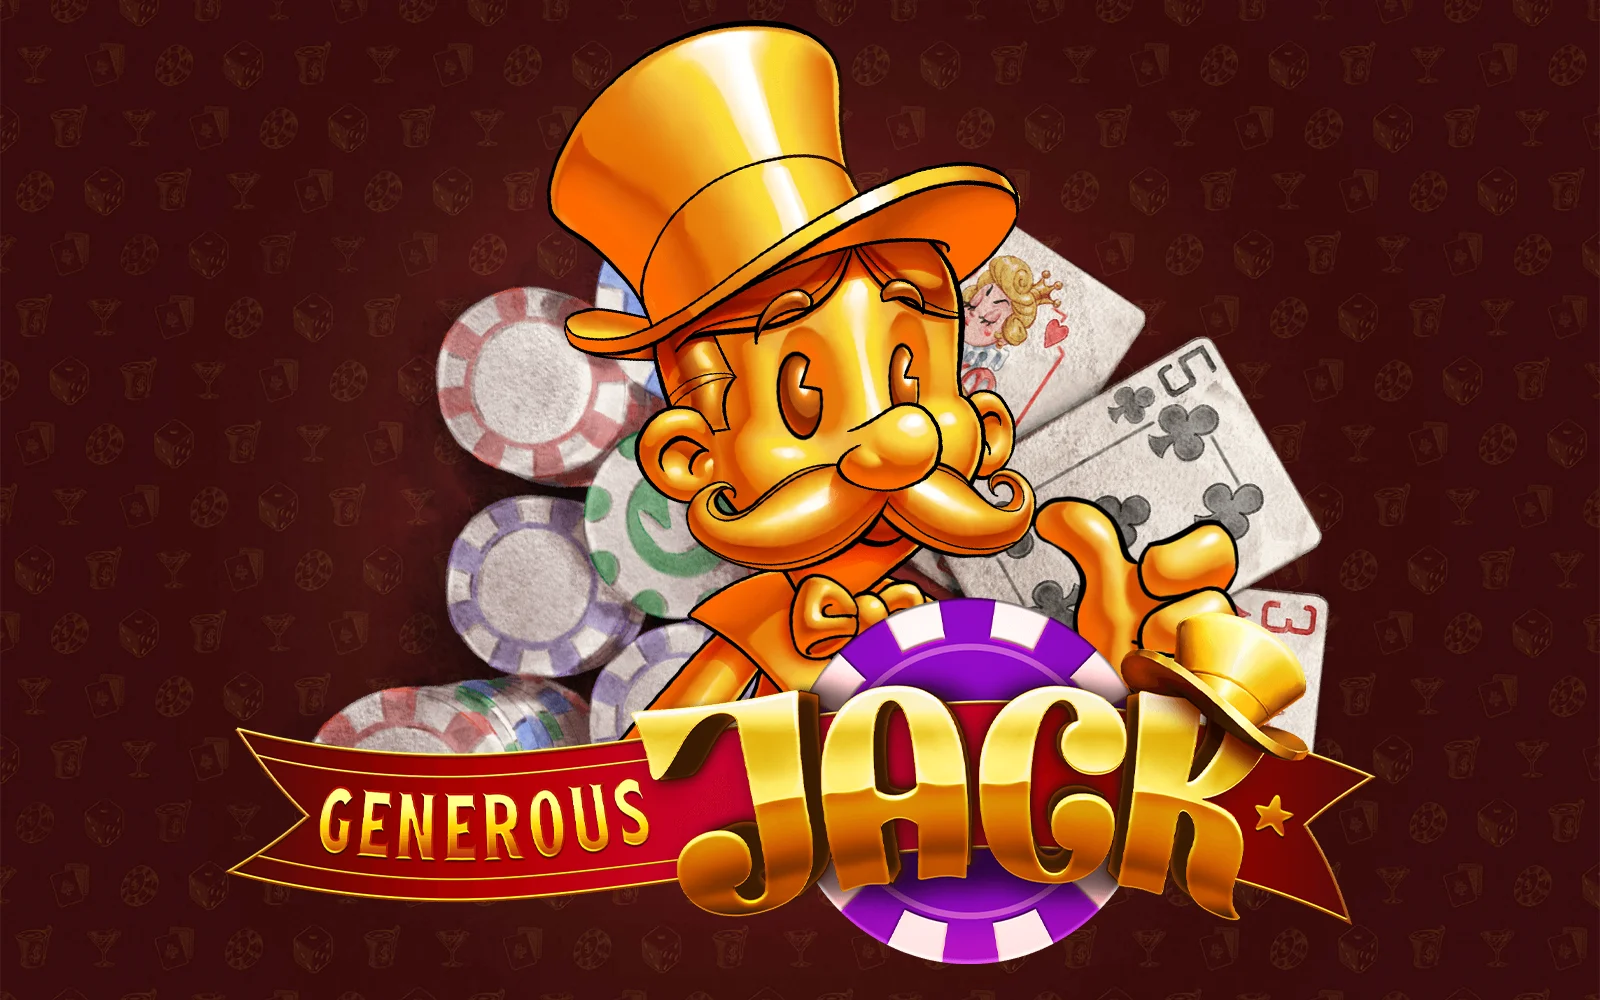 Play Generous Jack on Starcasino.be online casino